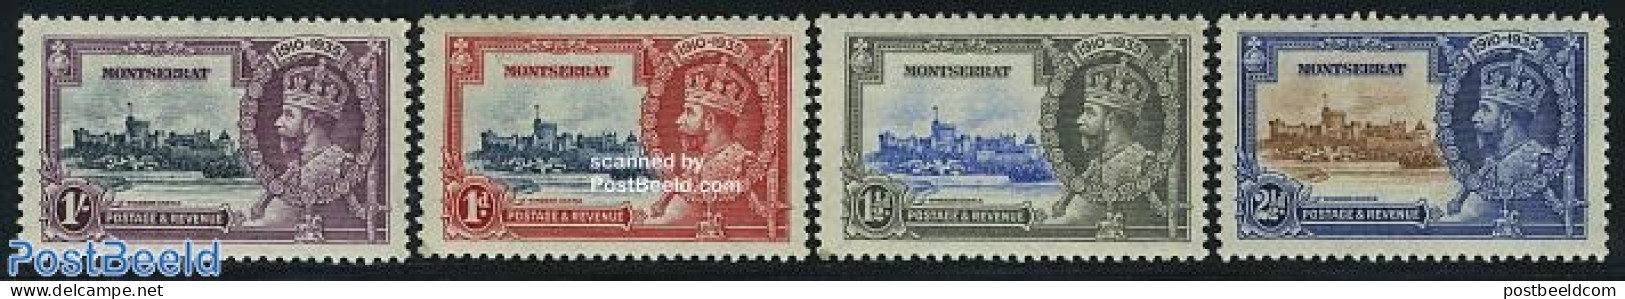 Montserrat 1935 Silver Jubilee 4v, Unused (hinged), History - Kings & Queens (Royalty) - Royalties, Royals